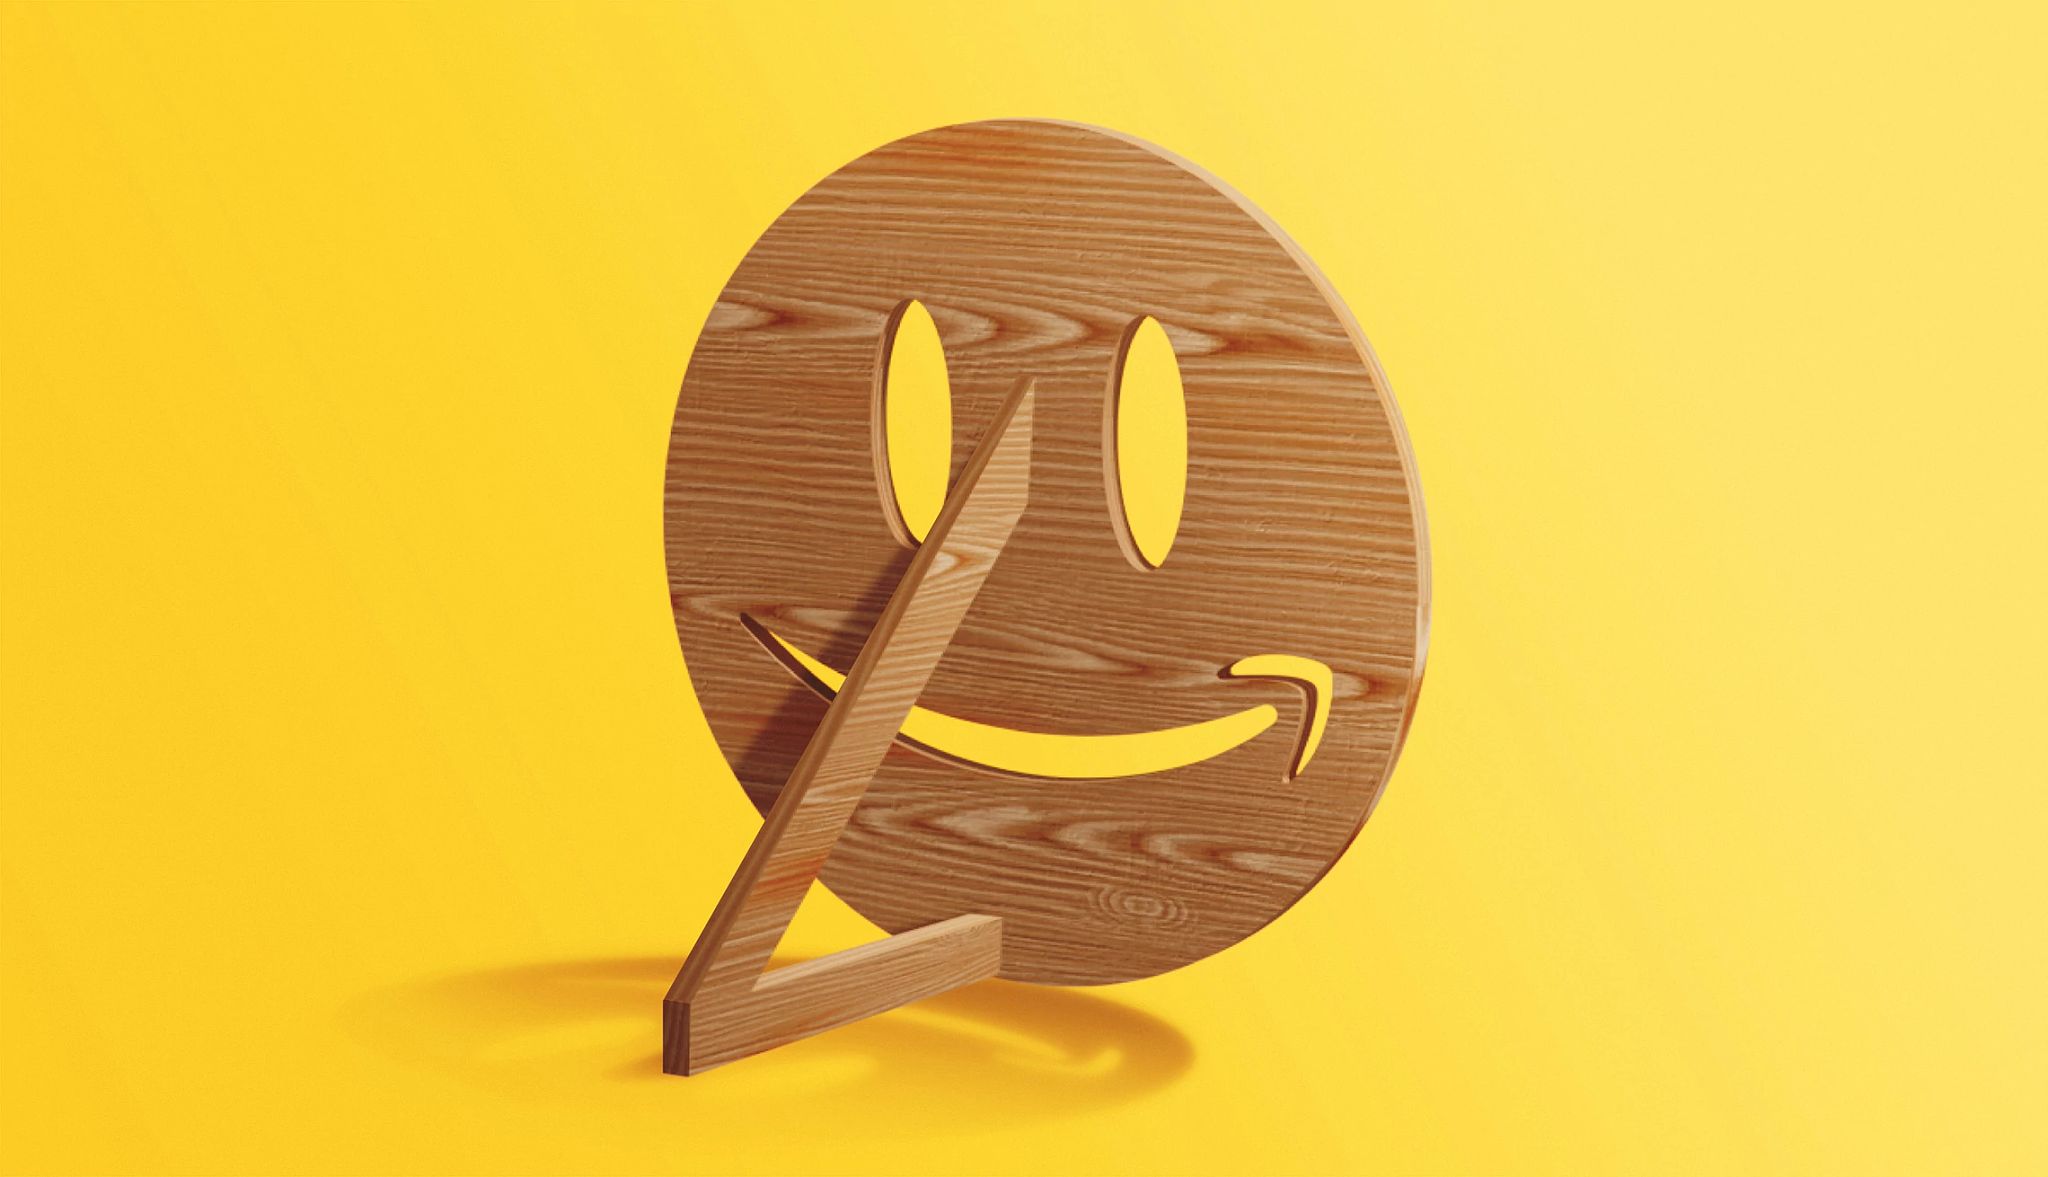 Un logo de Amazon que parece una máscara de madera.